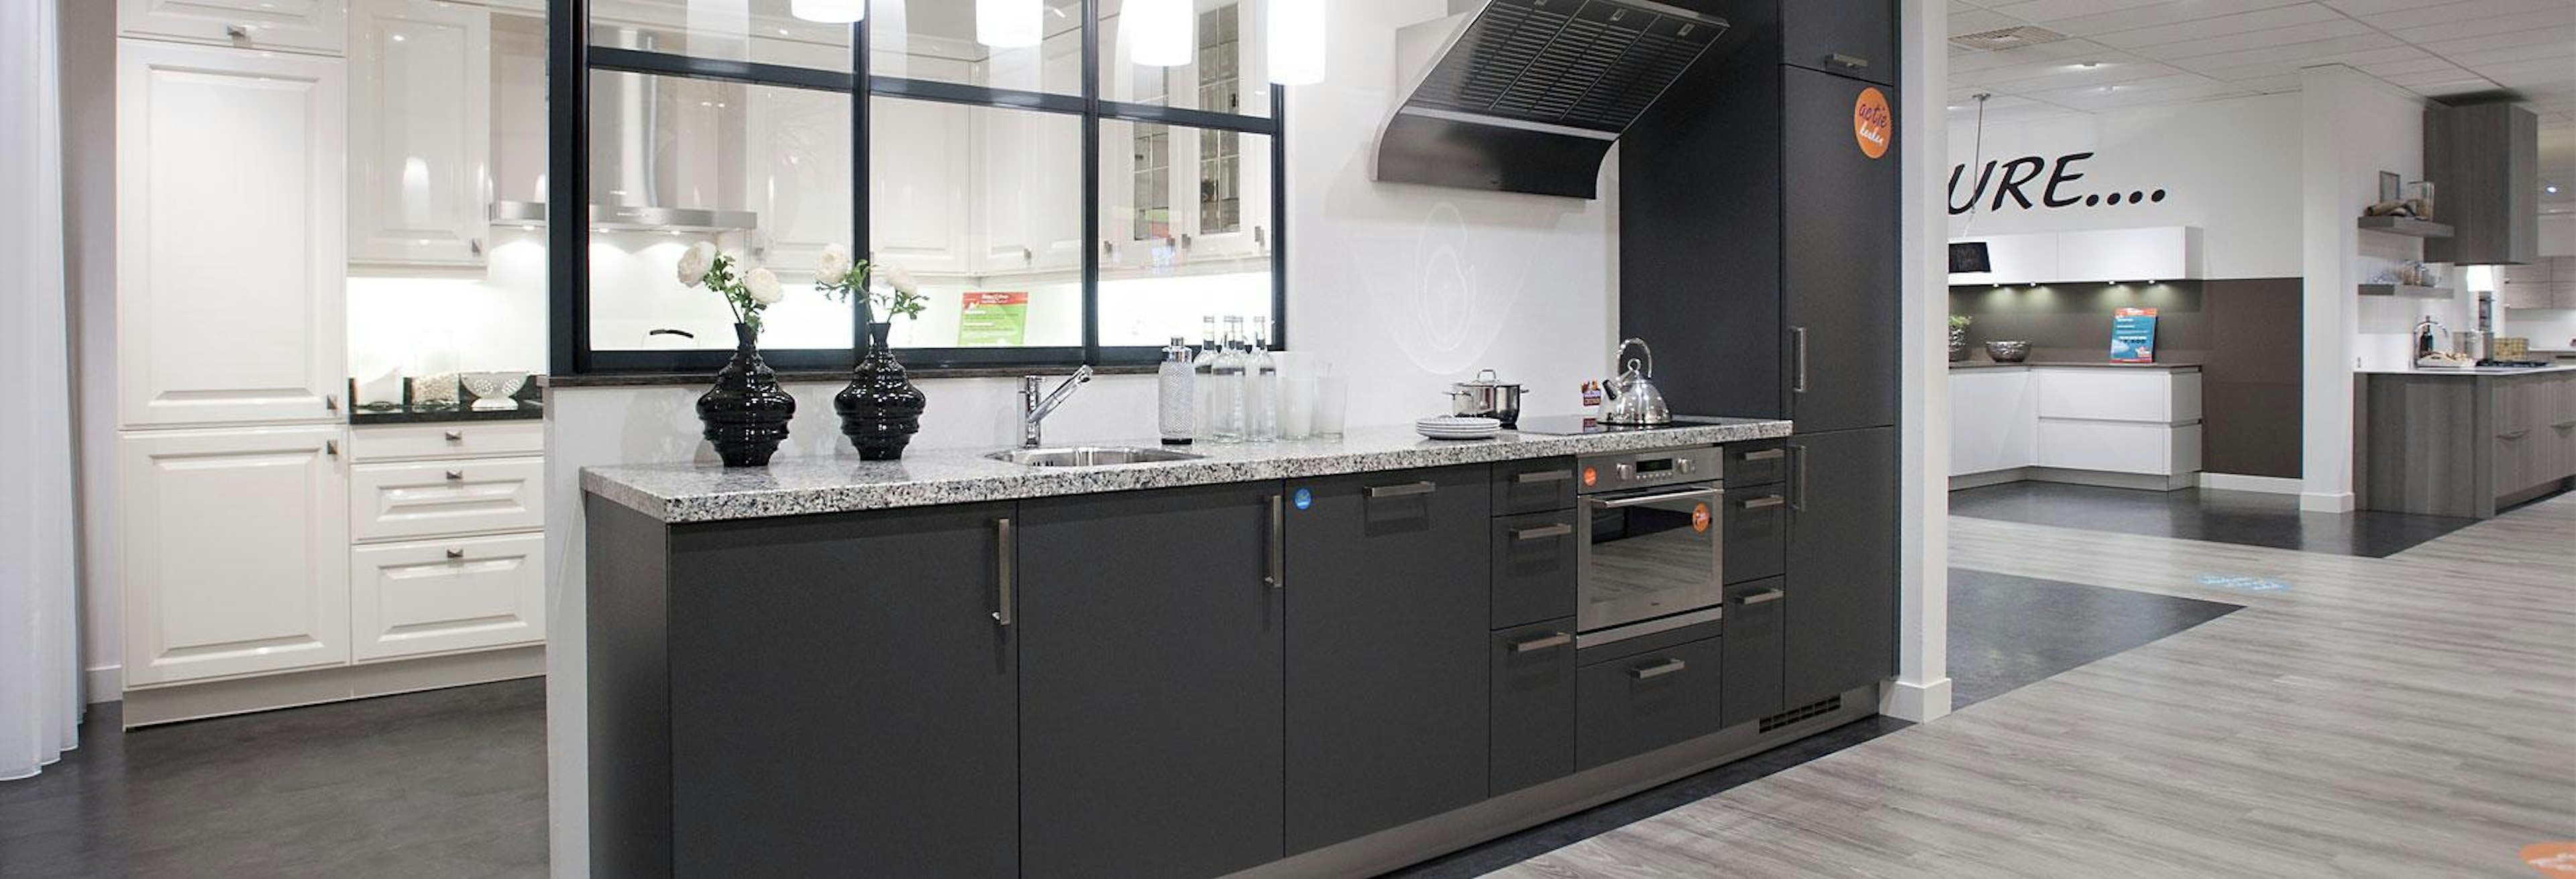 Moderne rechte keuken met granieten keukenblad